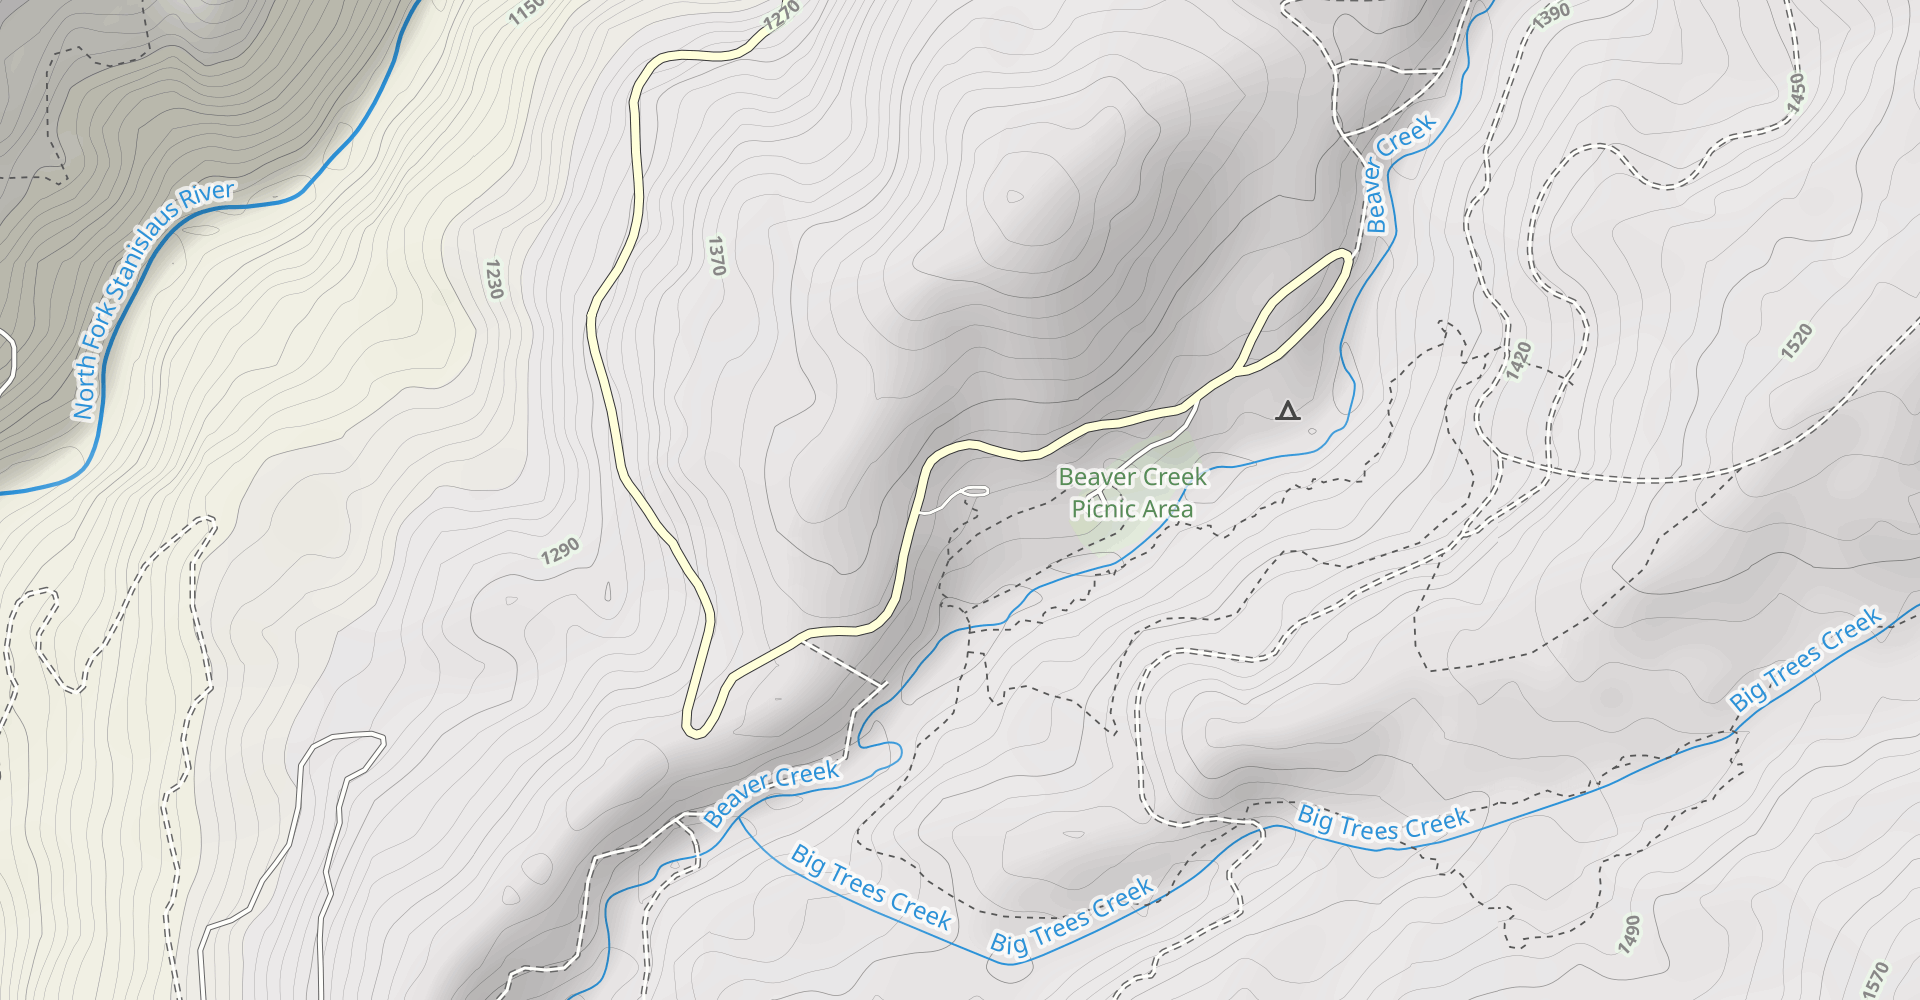 Calaveras South Grove Trail